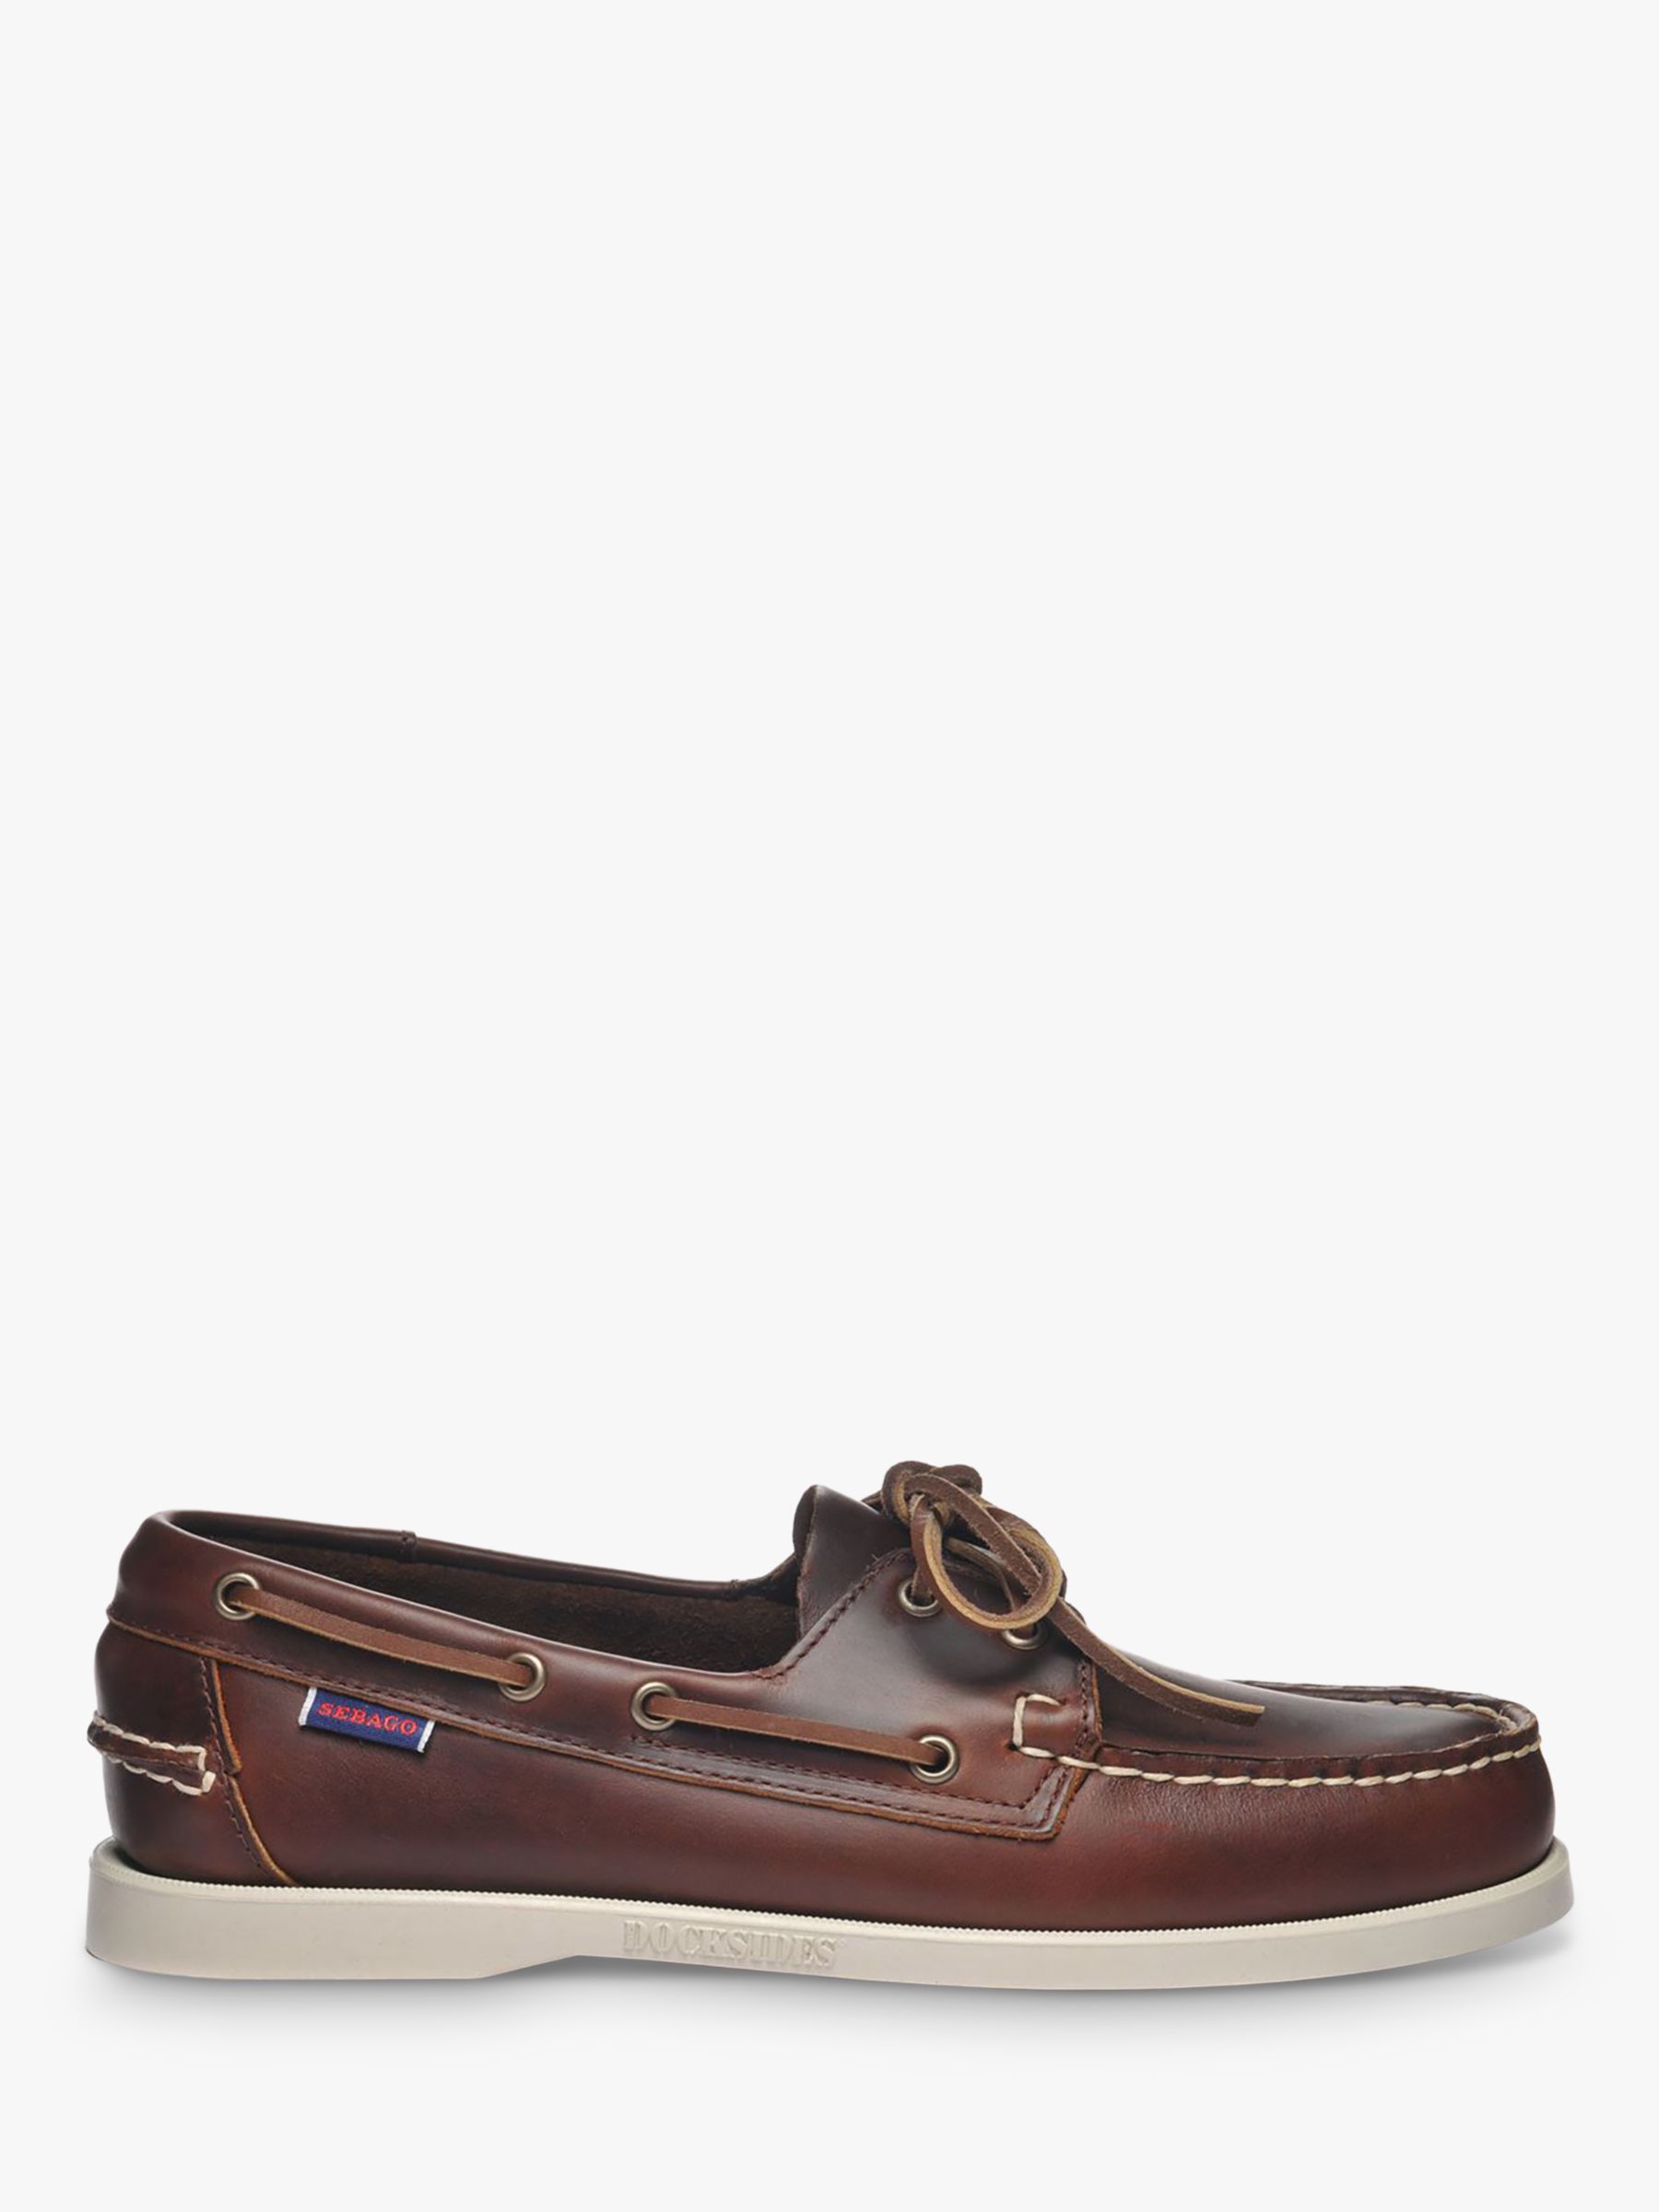 Sebago Docksides FGL Leather Boat Shoes, Brown, 7